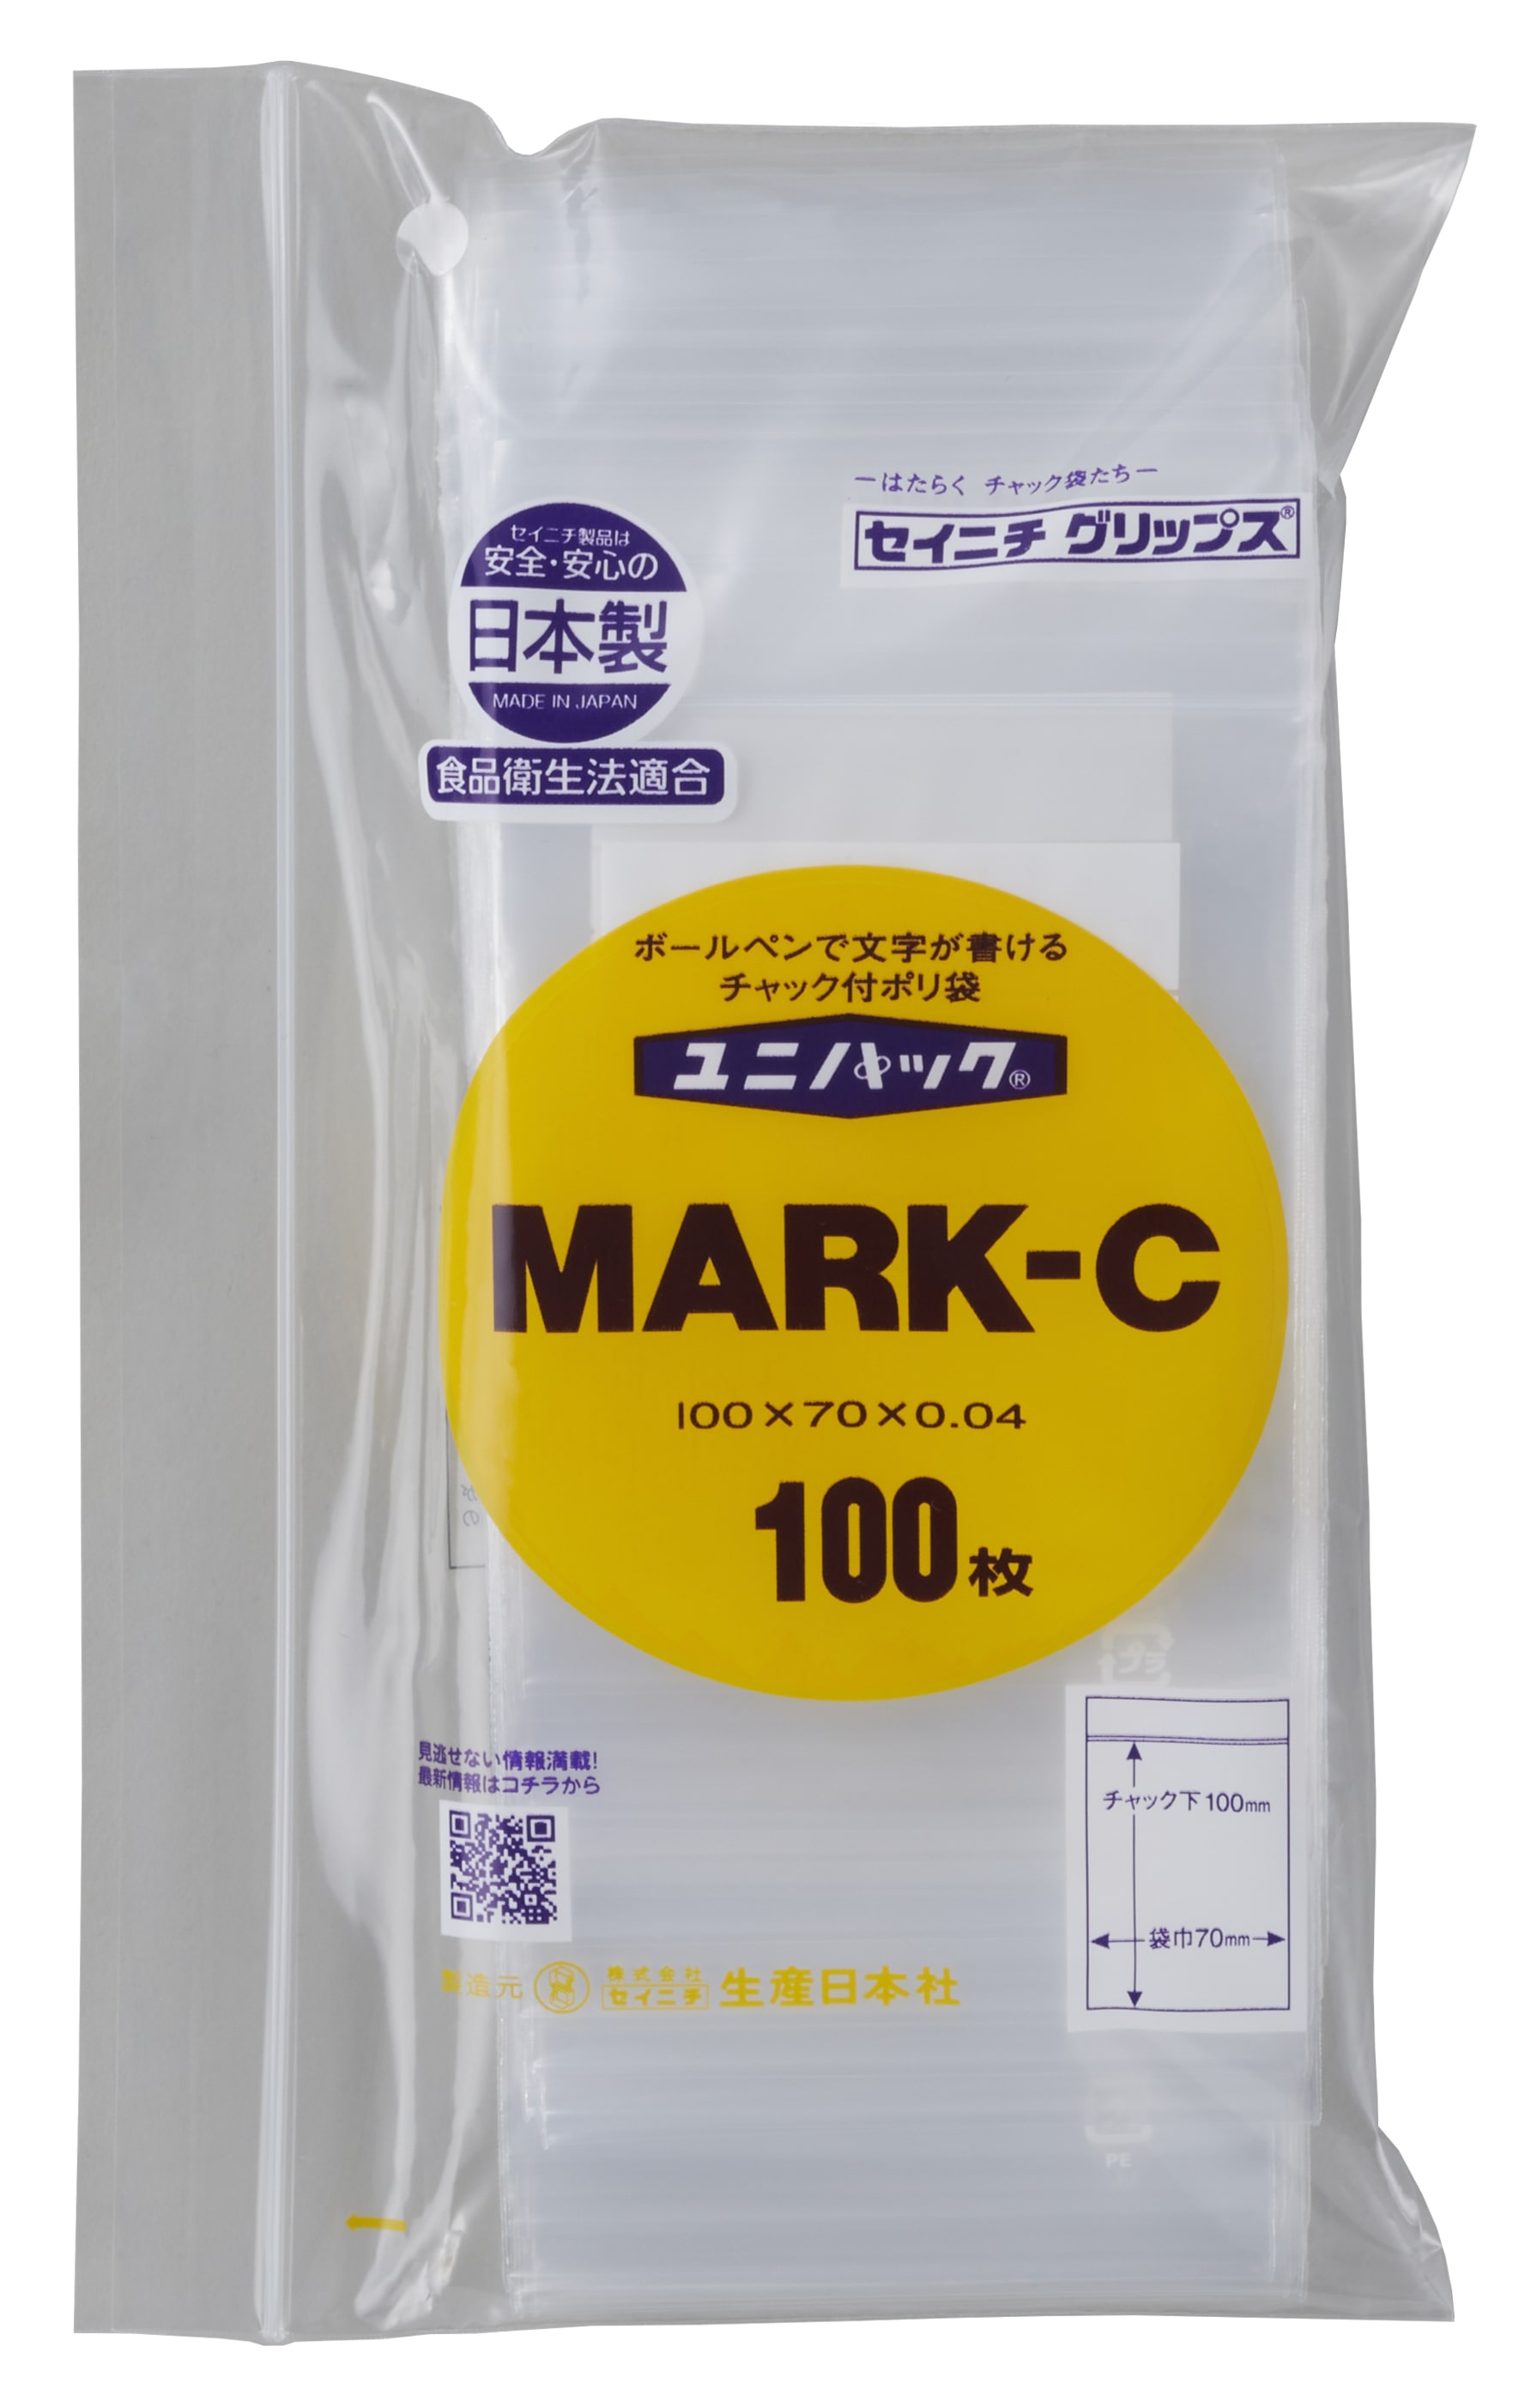 ユニパック MARK-C チャック付ポリ袋【100枚(1袋)】日本製白ベタ印刷部分にボールペン、サインペンなどで書き込みできます。